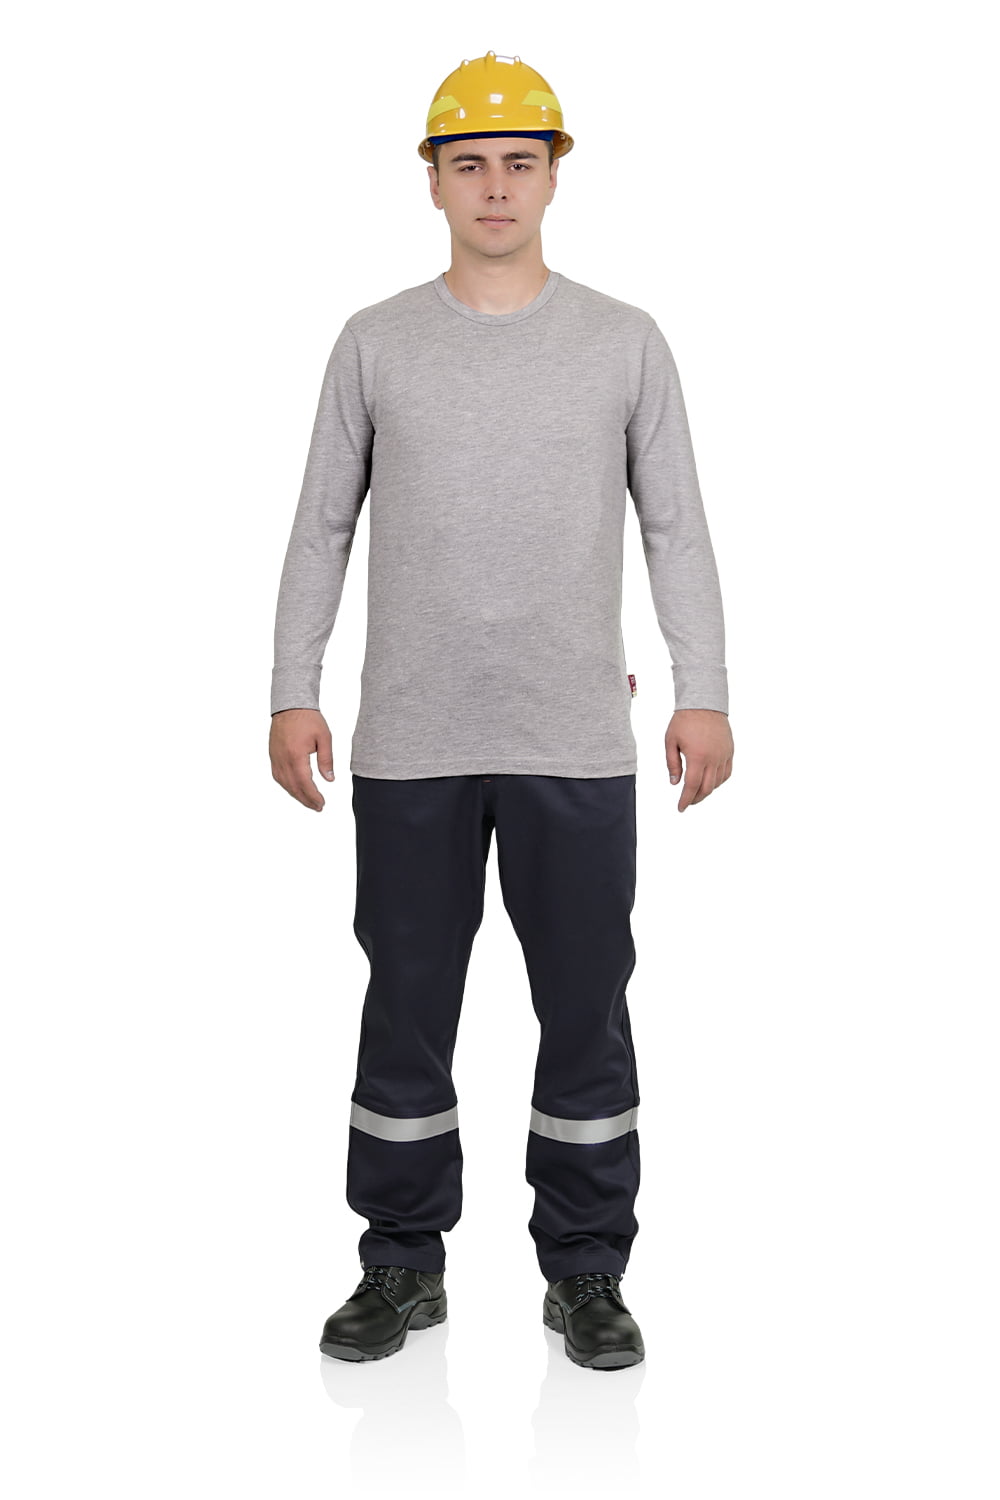 DANNY – 822131 Sweatshirt (Class 1)